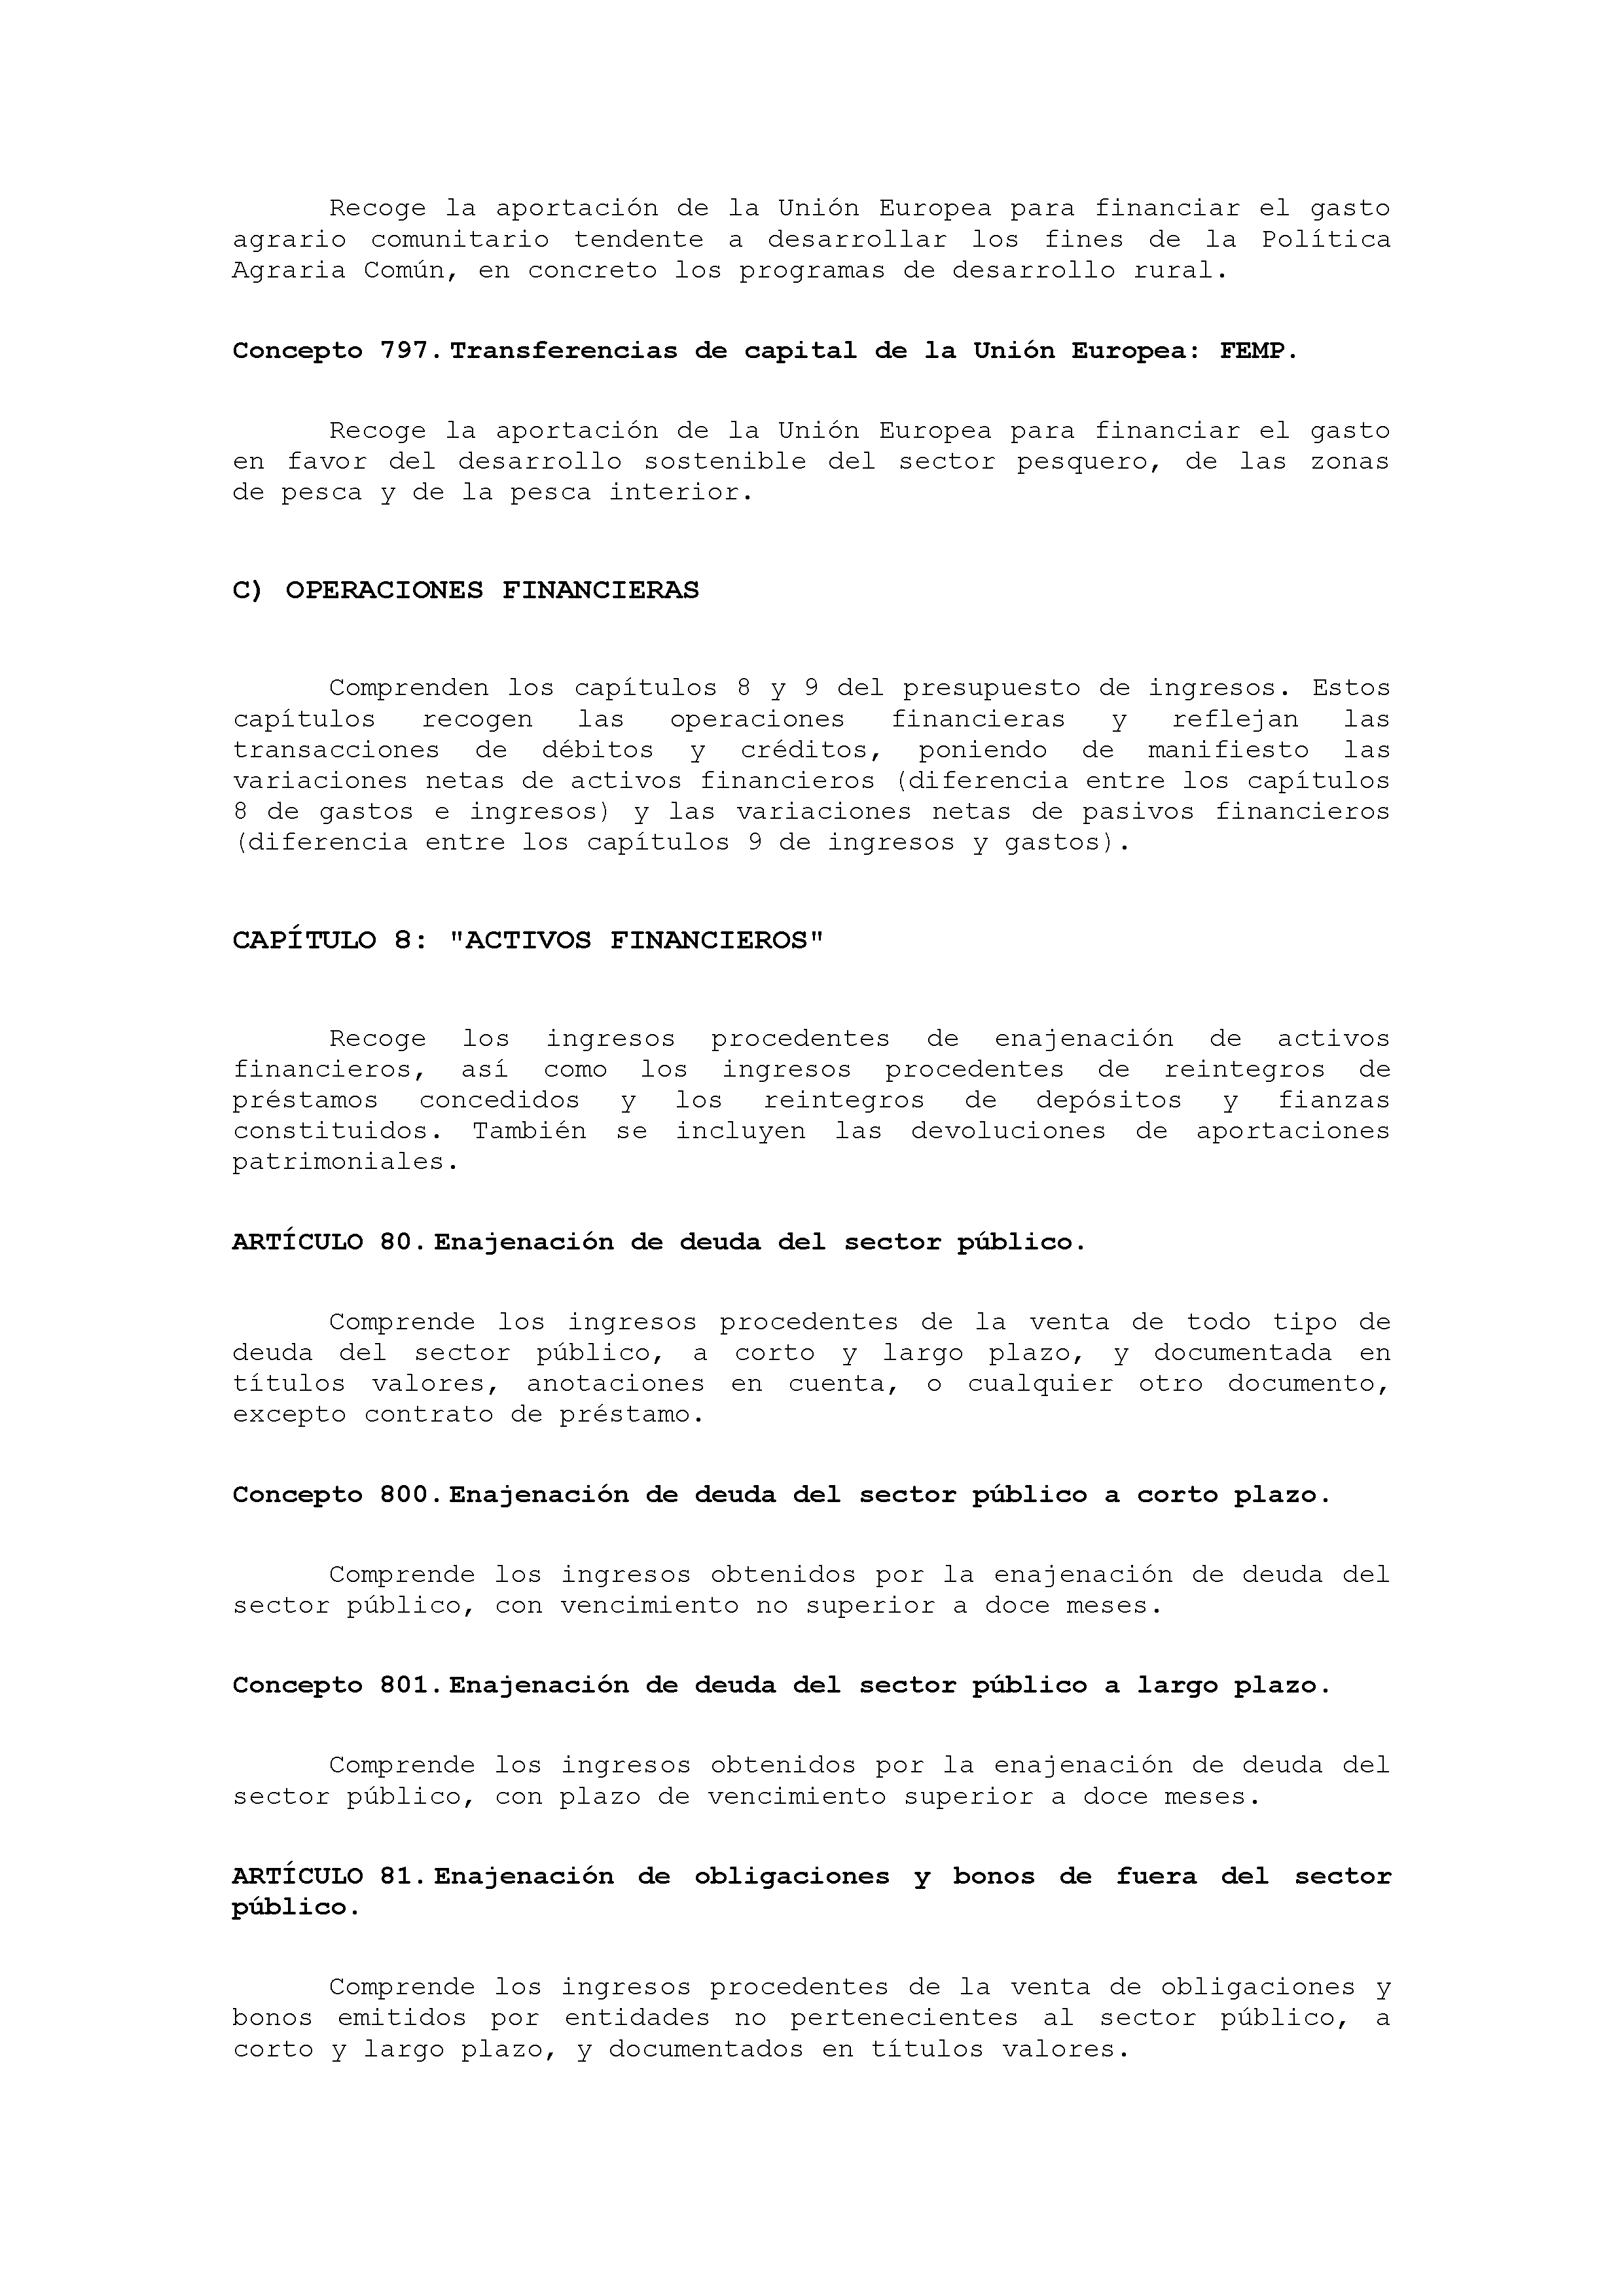 ANEXO VIII CÓDIGO DE LA CLASIFICACIÓN ECONÓMICA DE LOS INGRESOS PÚBLICOS Pag 23